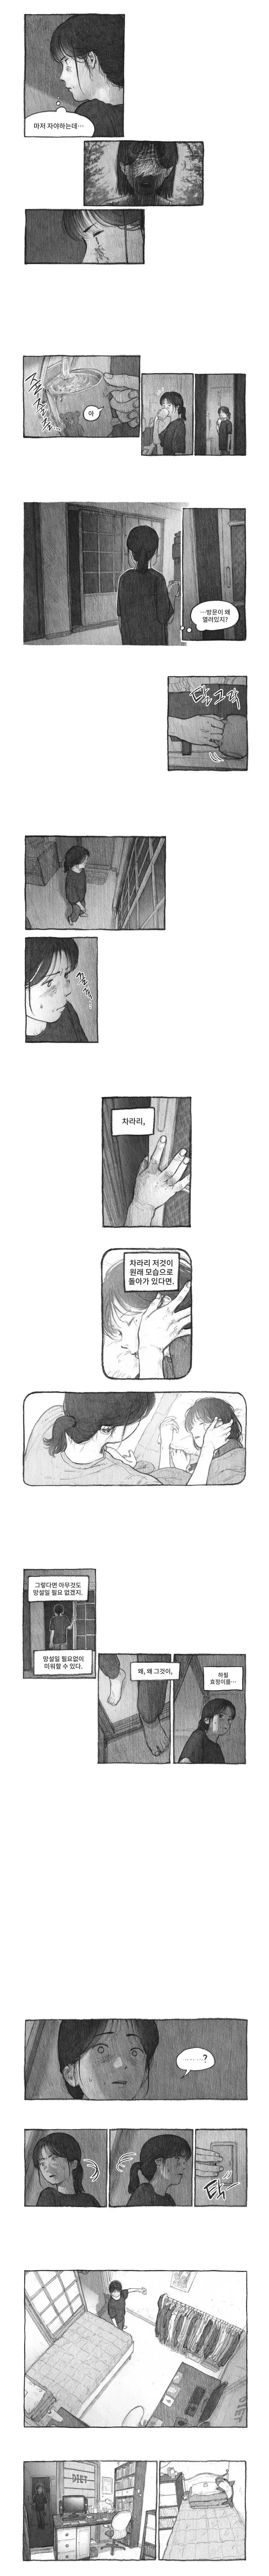 ㅆㄷ)도플갱어 | mbong.kr 엠봉